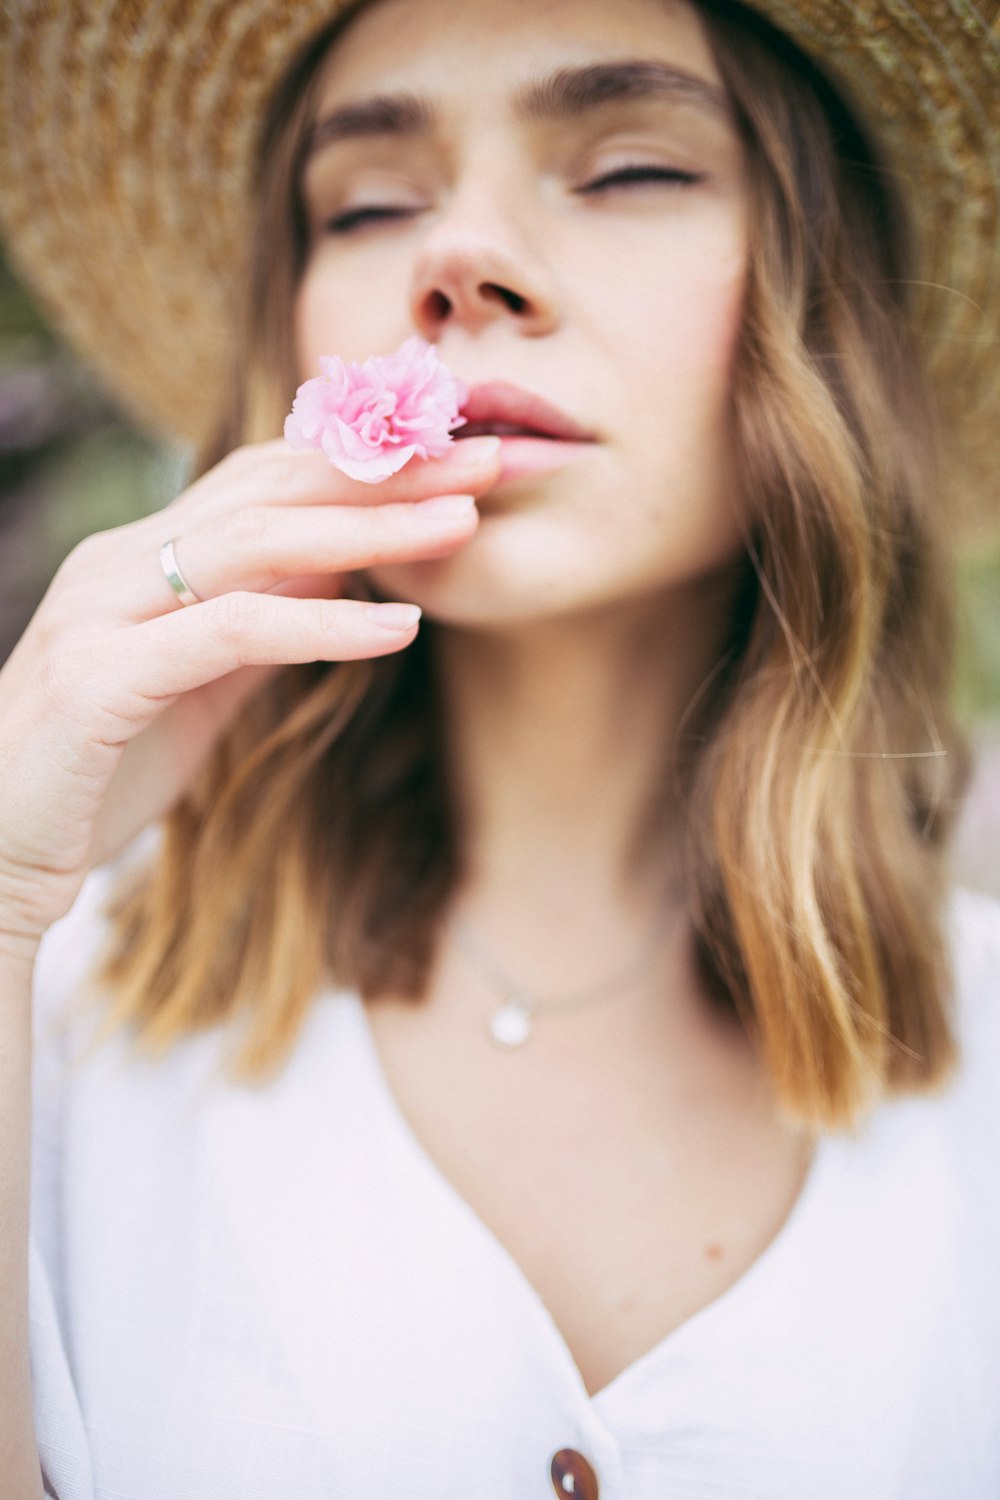 Frau riecht rosa Blume